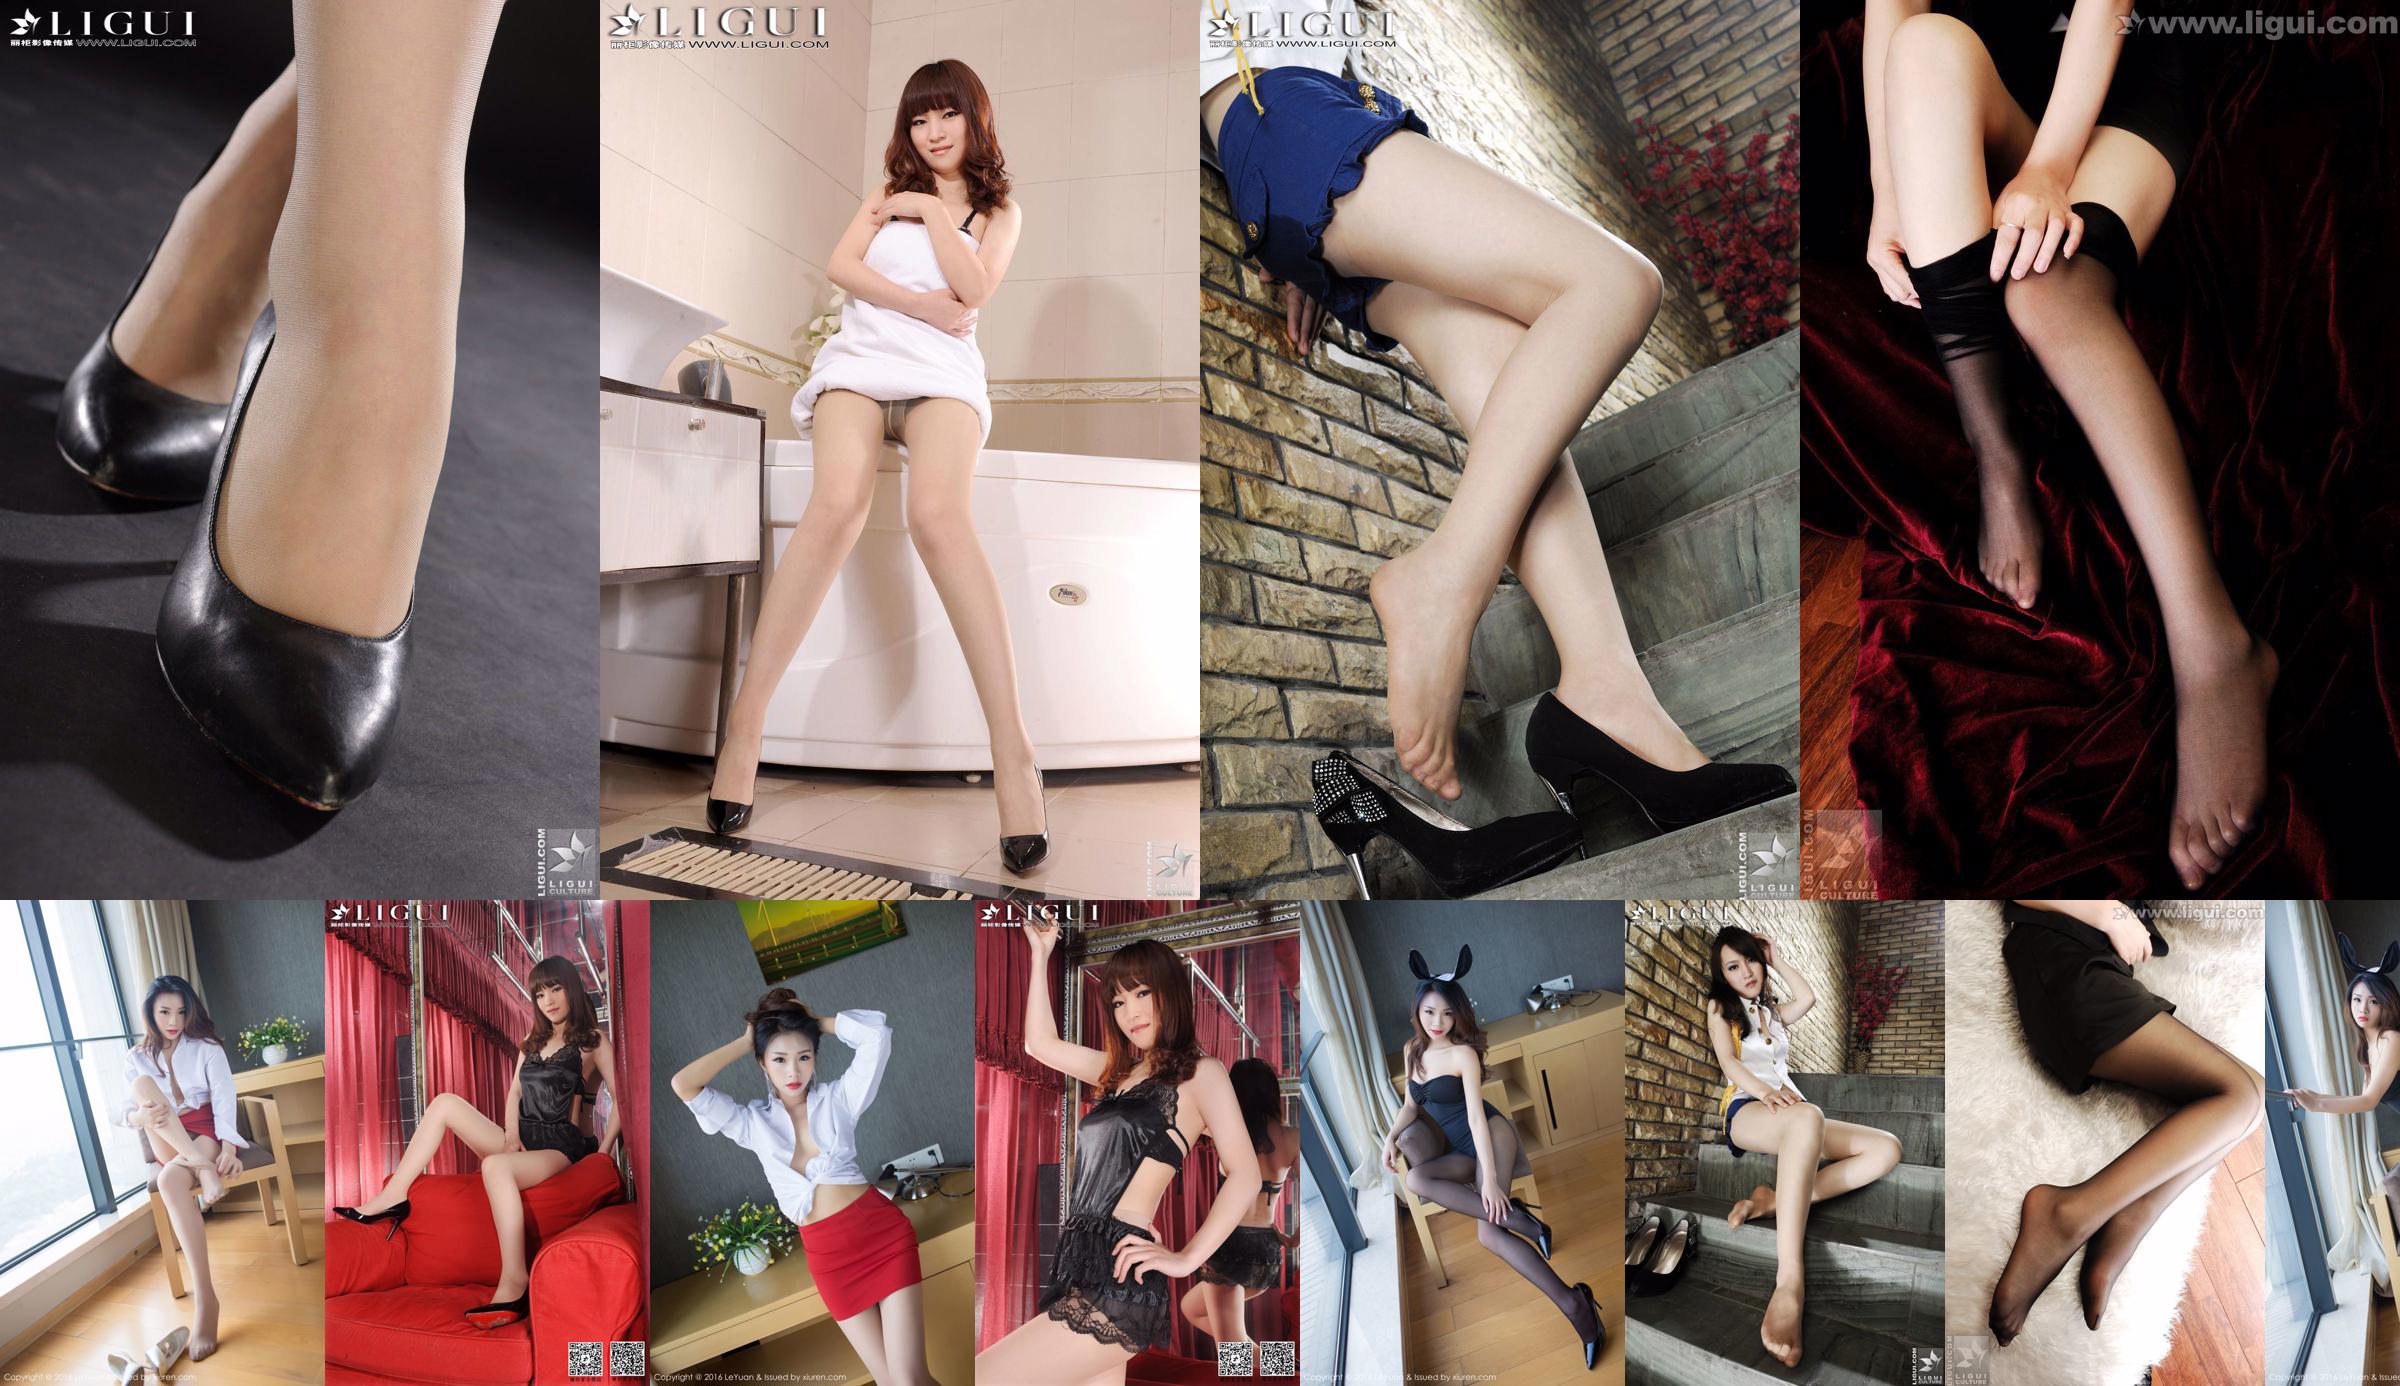 모델 티나 "여자 비서의 매혹적인 미녀"[丽 柜 LiGui] 아름다운 다리와 발 사진 No.4106fd 페이지 15